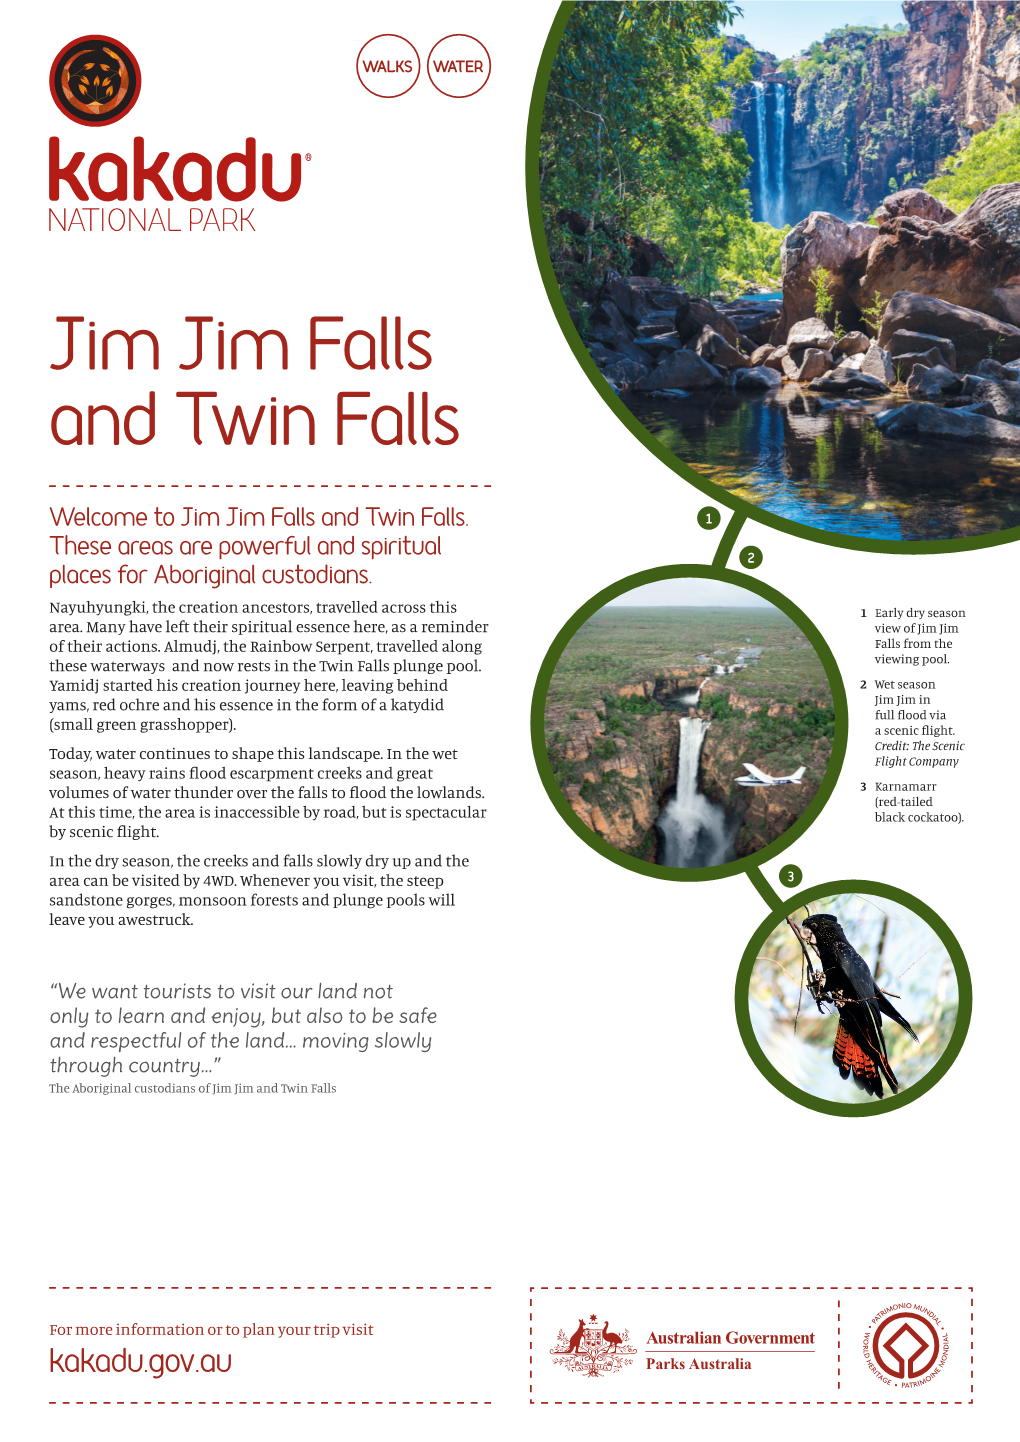 Jim Jim Falls and Twin Falls